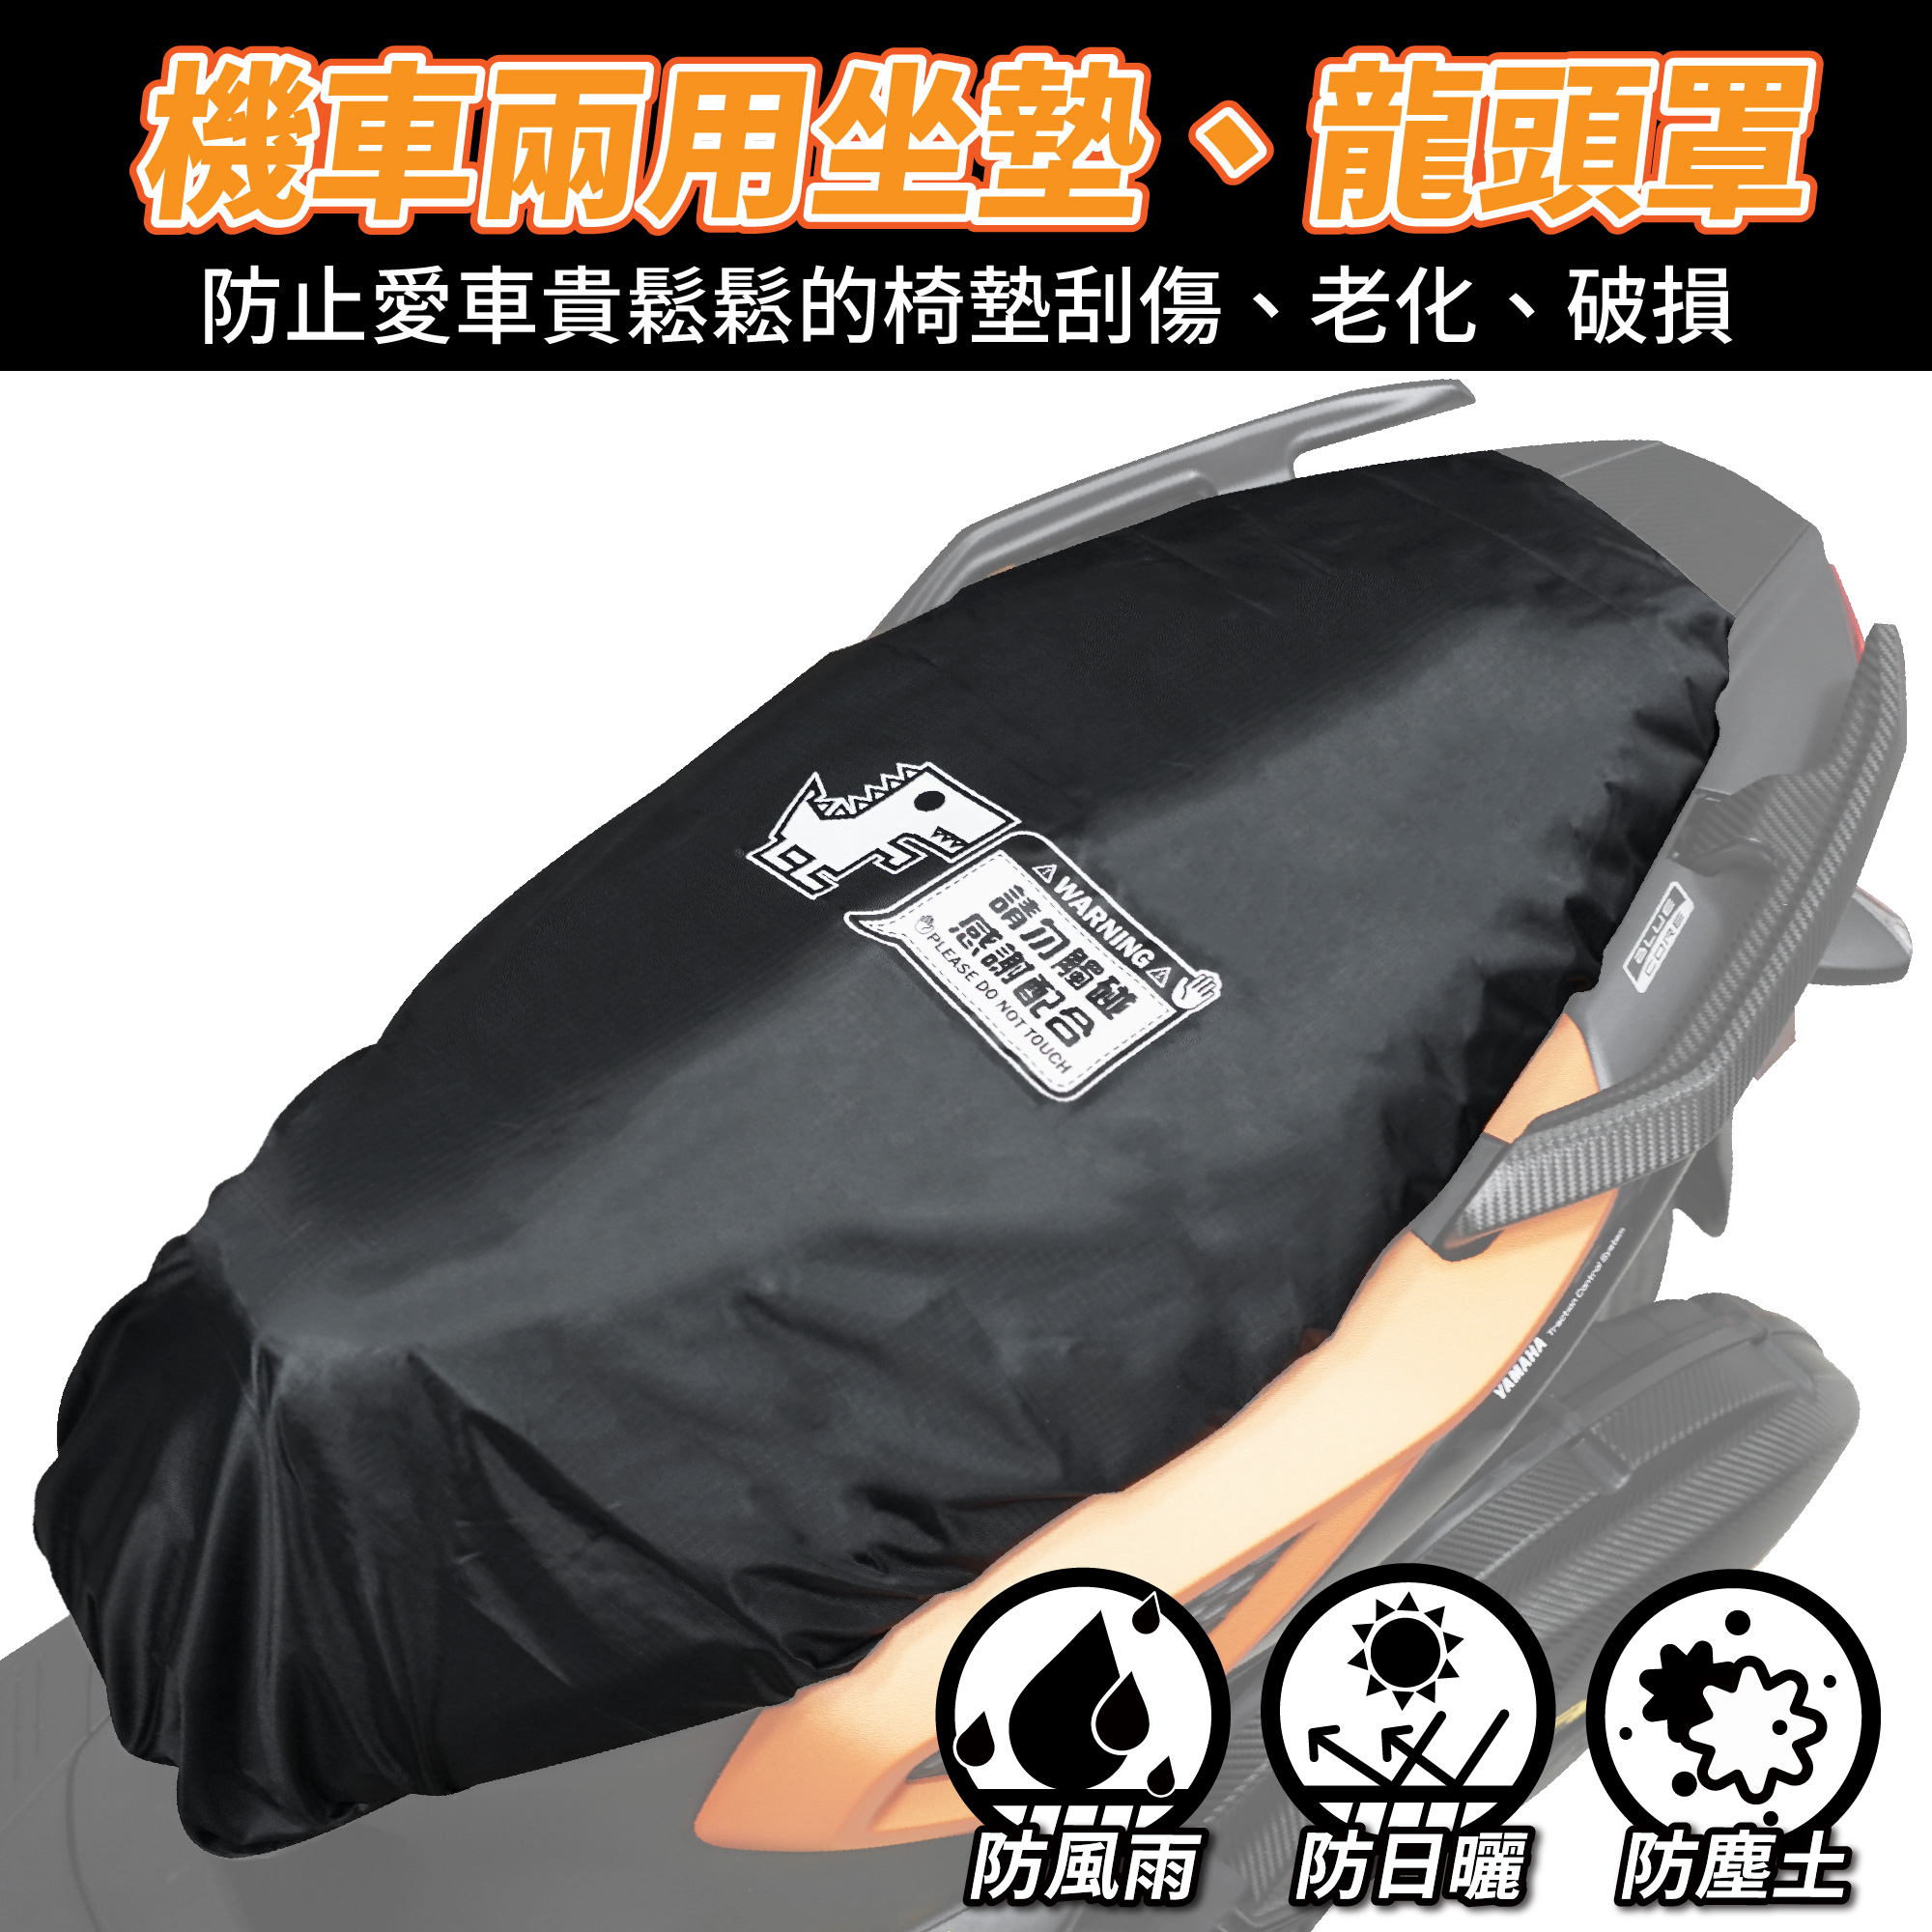 机车坐垫 椅套 防晒 防雨套 机车椅套 台湾品牌 XILLA吉拉 改装